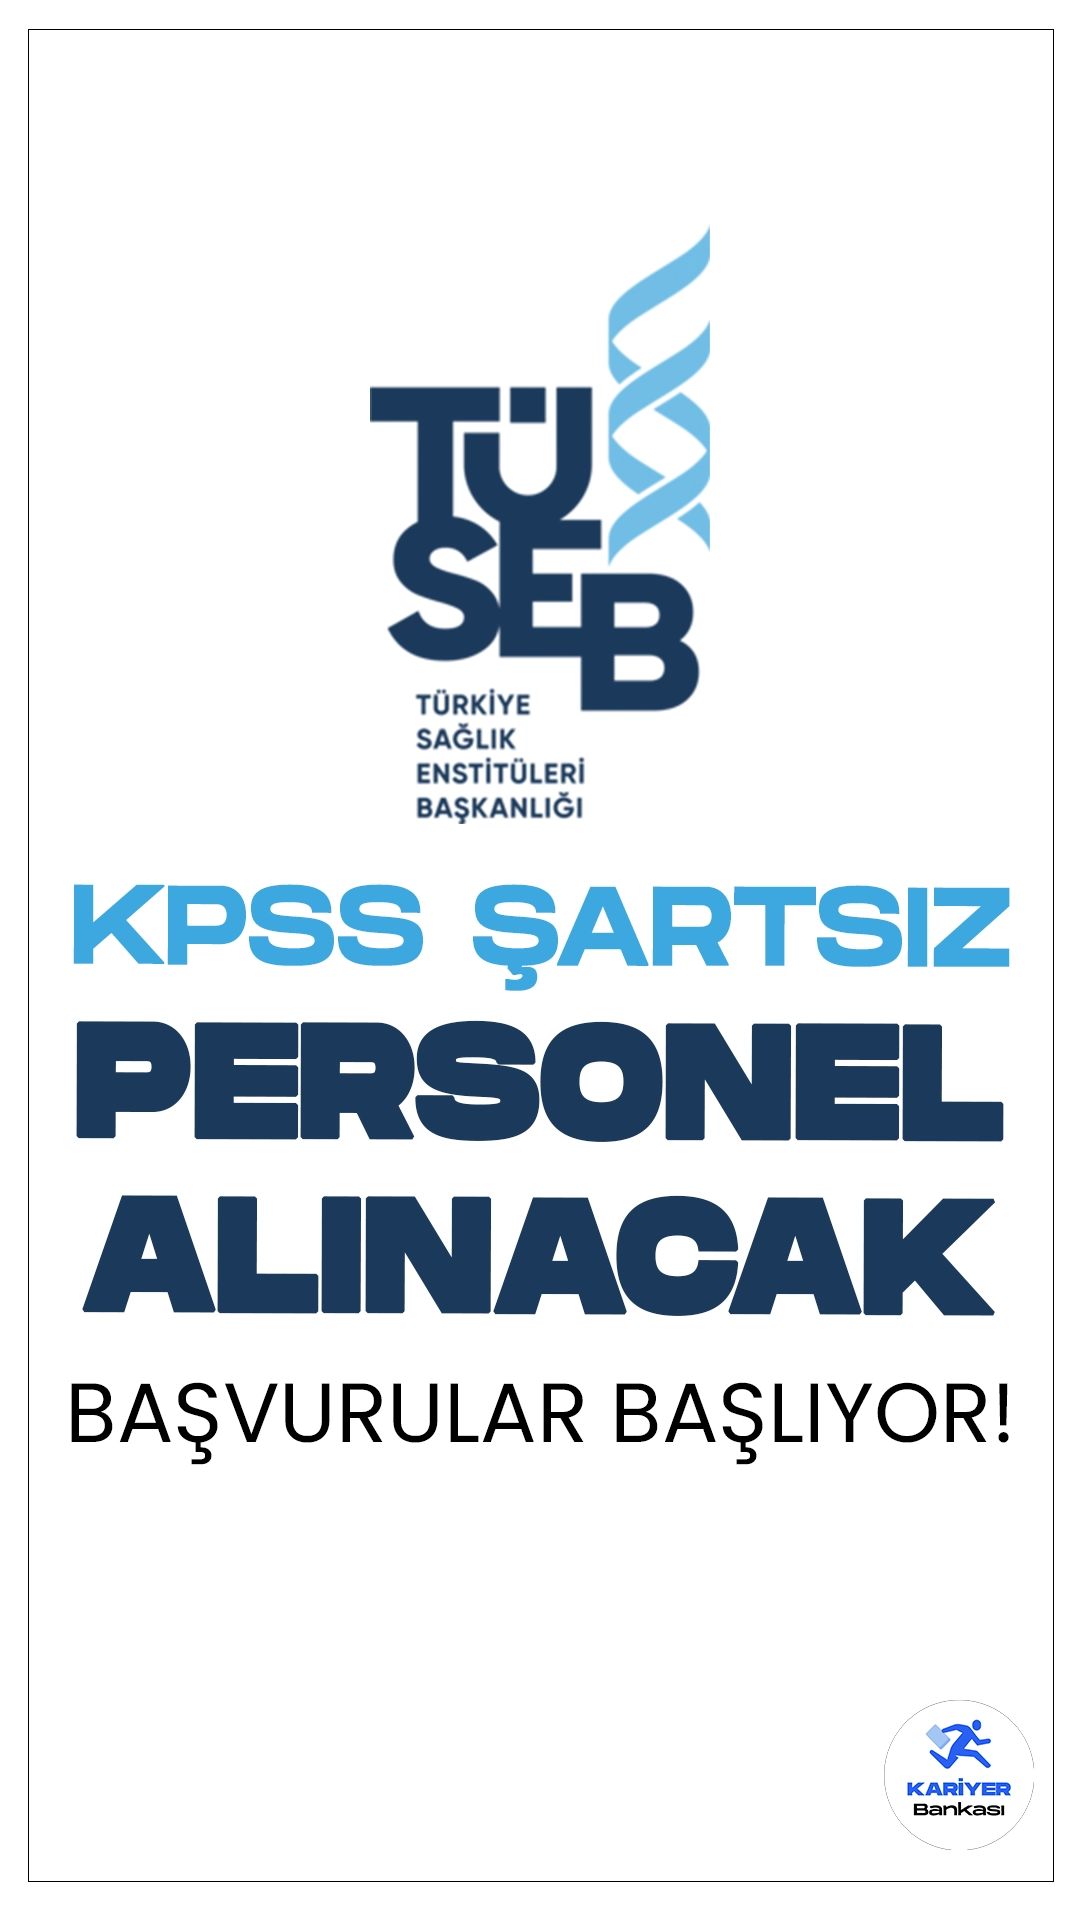 TÜSEB 30 Personel Alımı Başvuruları Başlıyor.Resmi Gazete'de yayımlanan duyuruya göre, Türkiye Sağlık Enstitüleri Başkanlığına (TÜSEB) koruma ve güvenlik görevlisi, hizmetli ve şoför pozisyonlarında personel alımı yapılacak. Başvuru işlemleri 20 Mayıs'ta başlıyor.Kontenjan dağılımı ve başvuru bilgilerine dair tüm detaylar Kariyerbankasi.net'in bu haberinde.